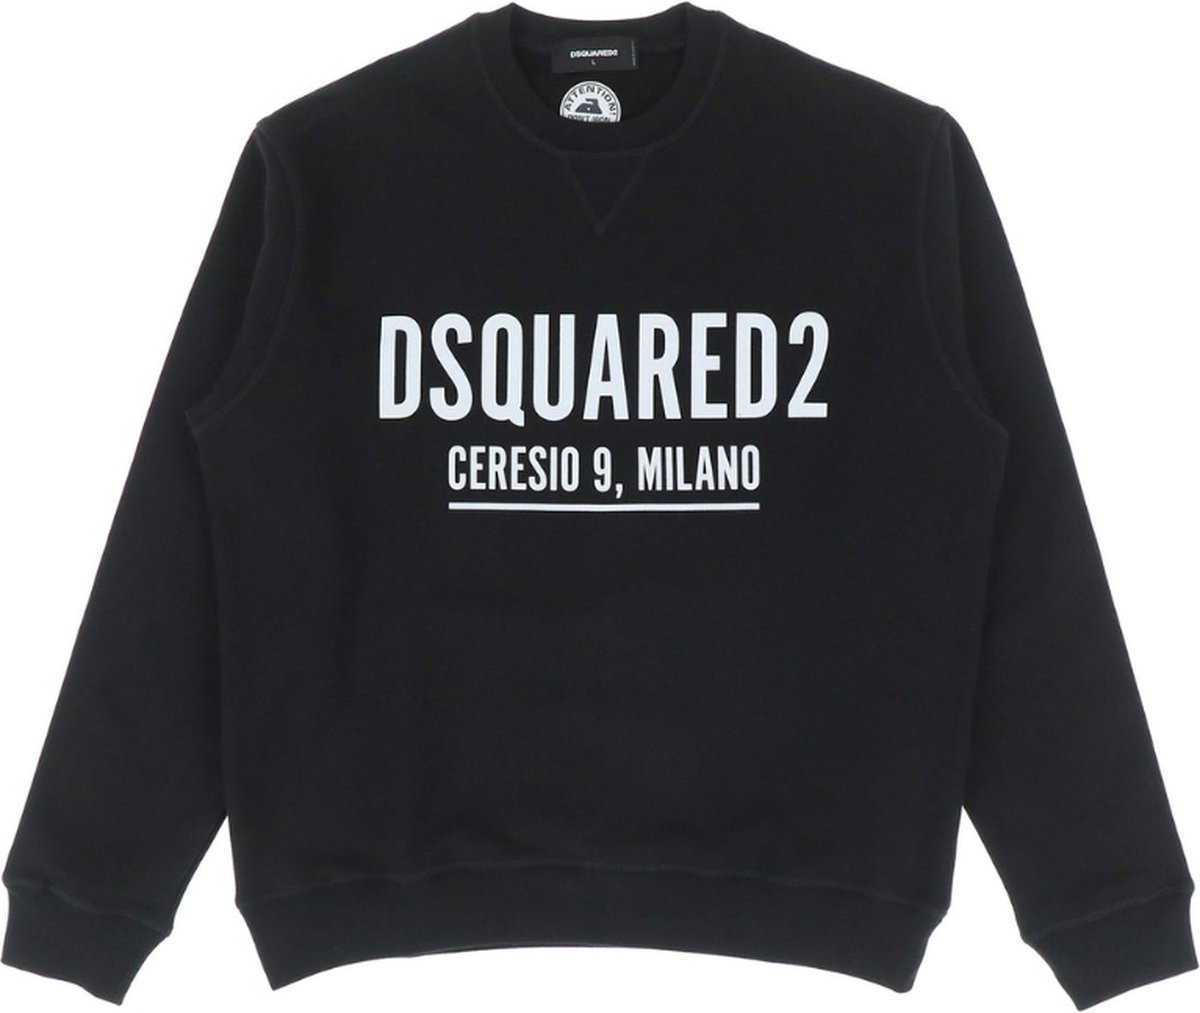 Dsquared2 Ceresio Sweater Black